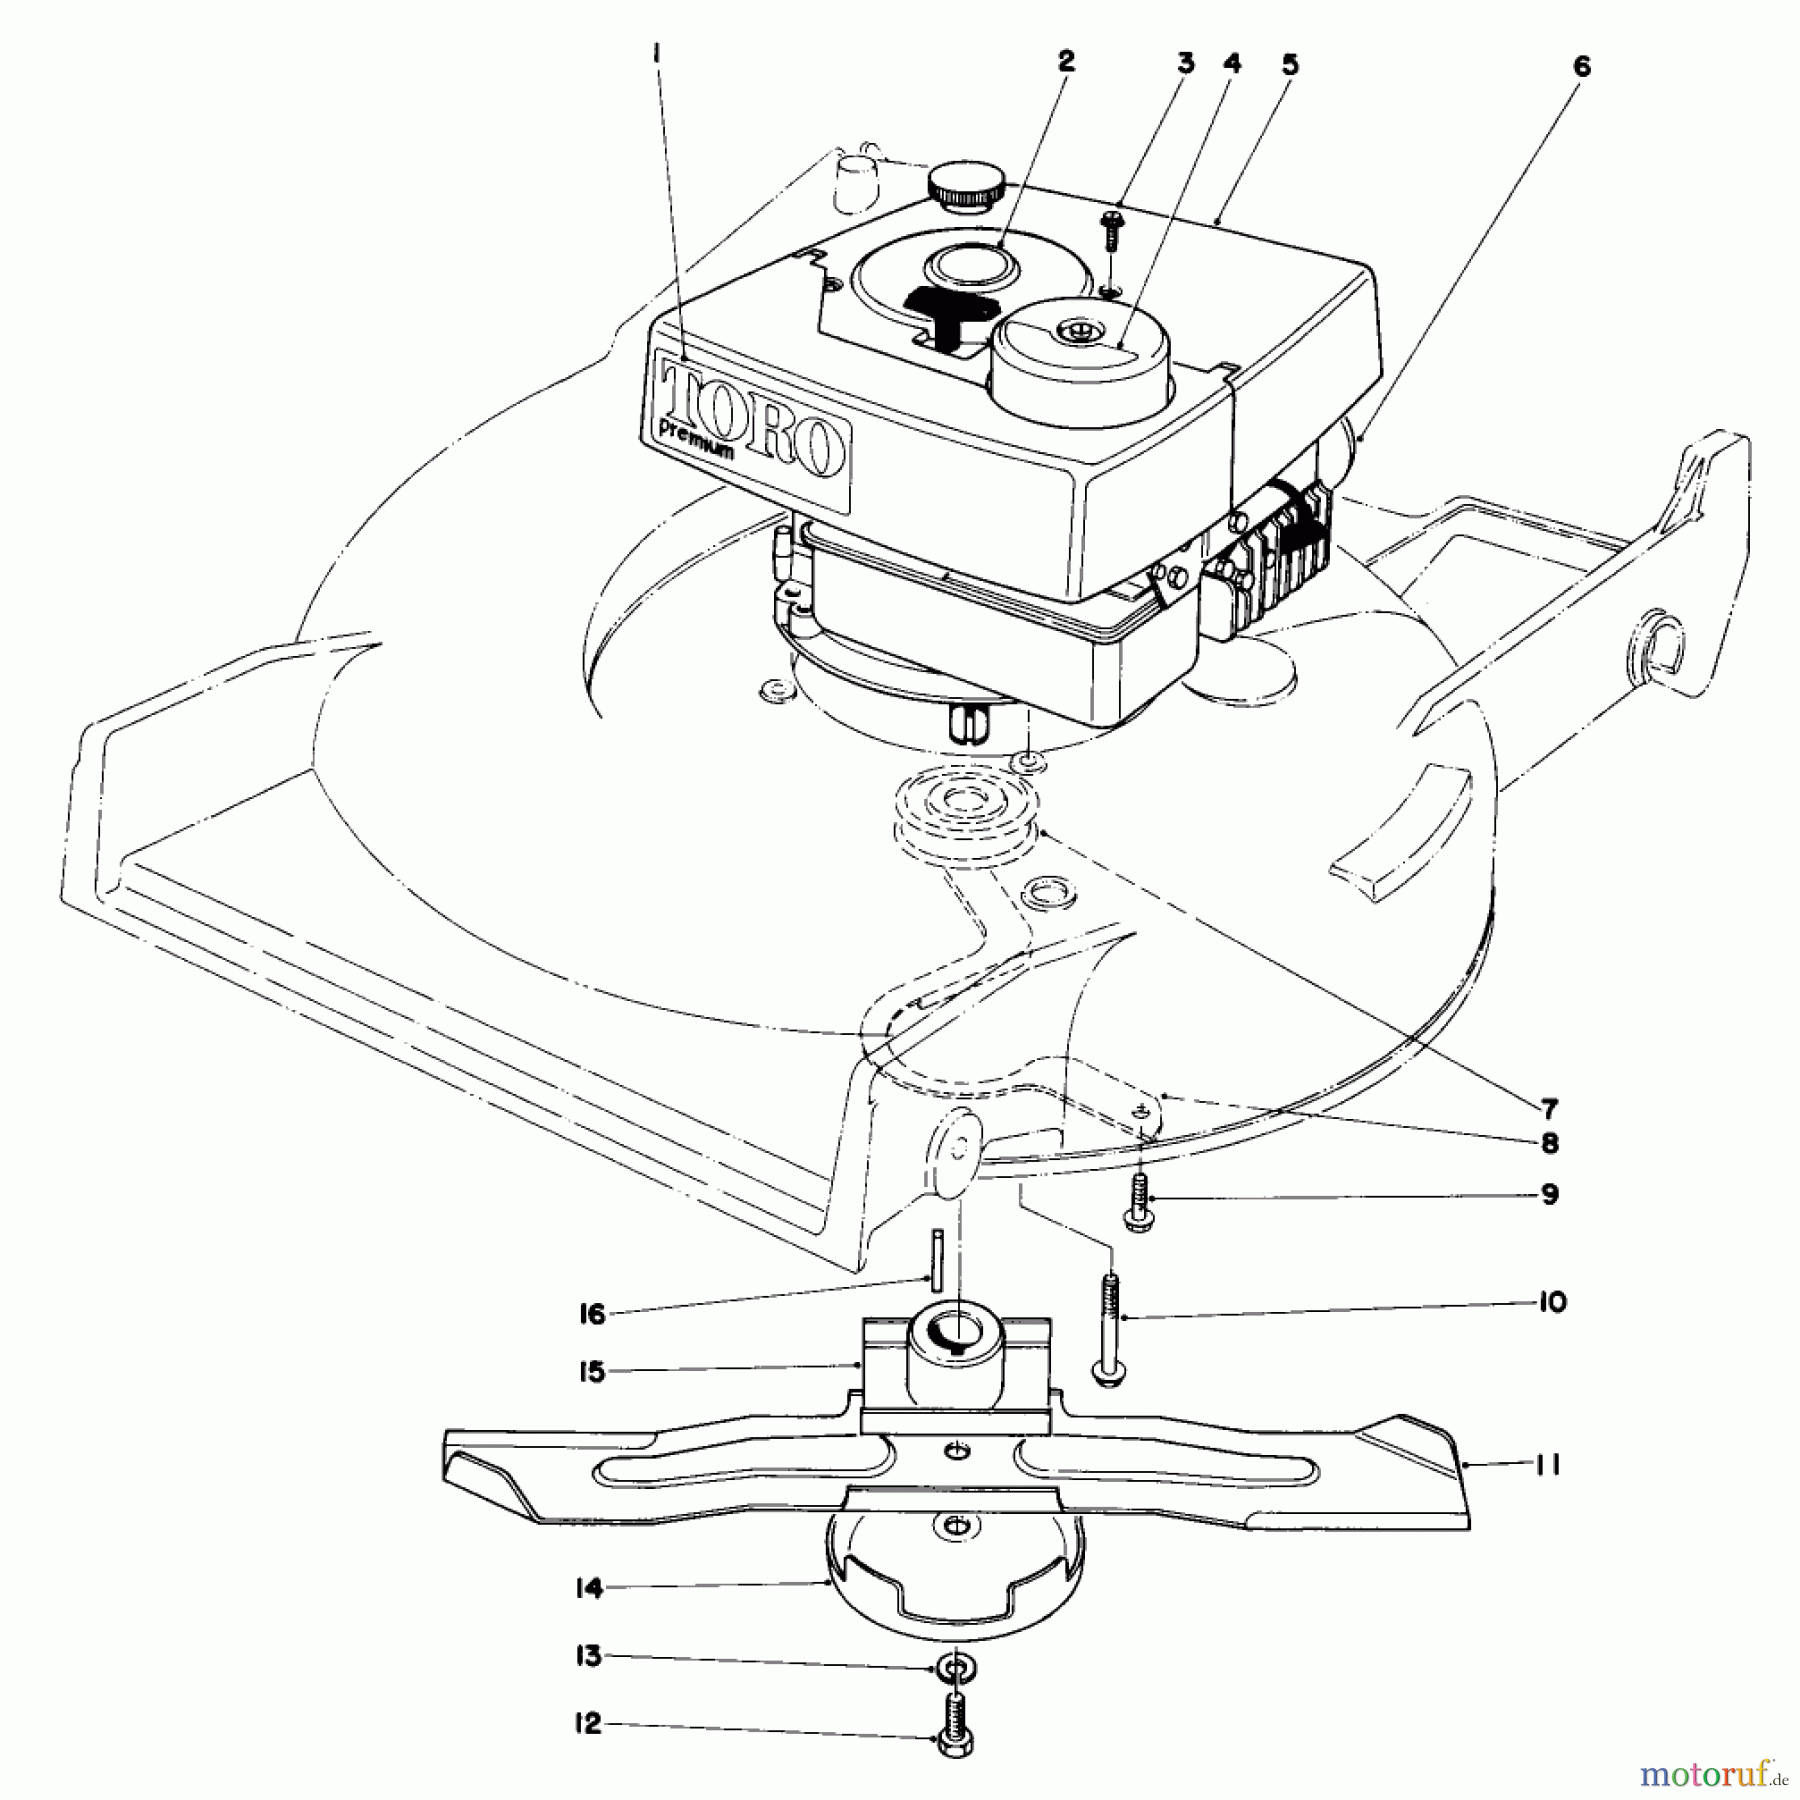  Toro Neu Mowers, Walk-Behind Seite 1 20785 - Toro Lawnmower, 1980 (0000001-0999999) ENGINE ASSEMBLY